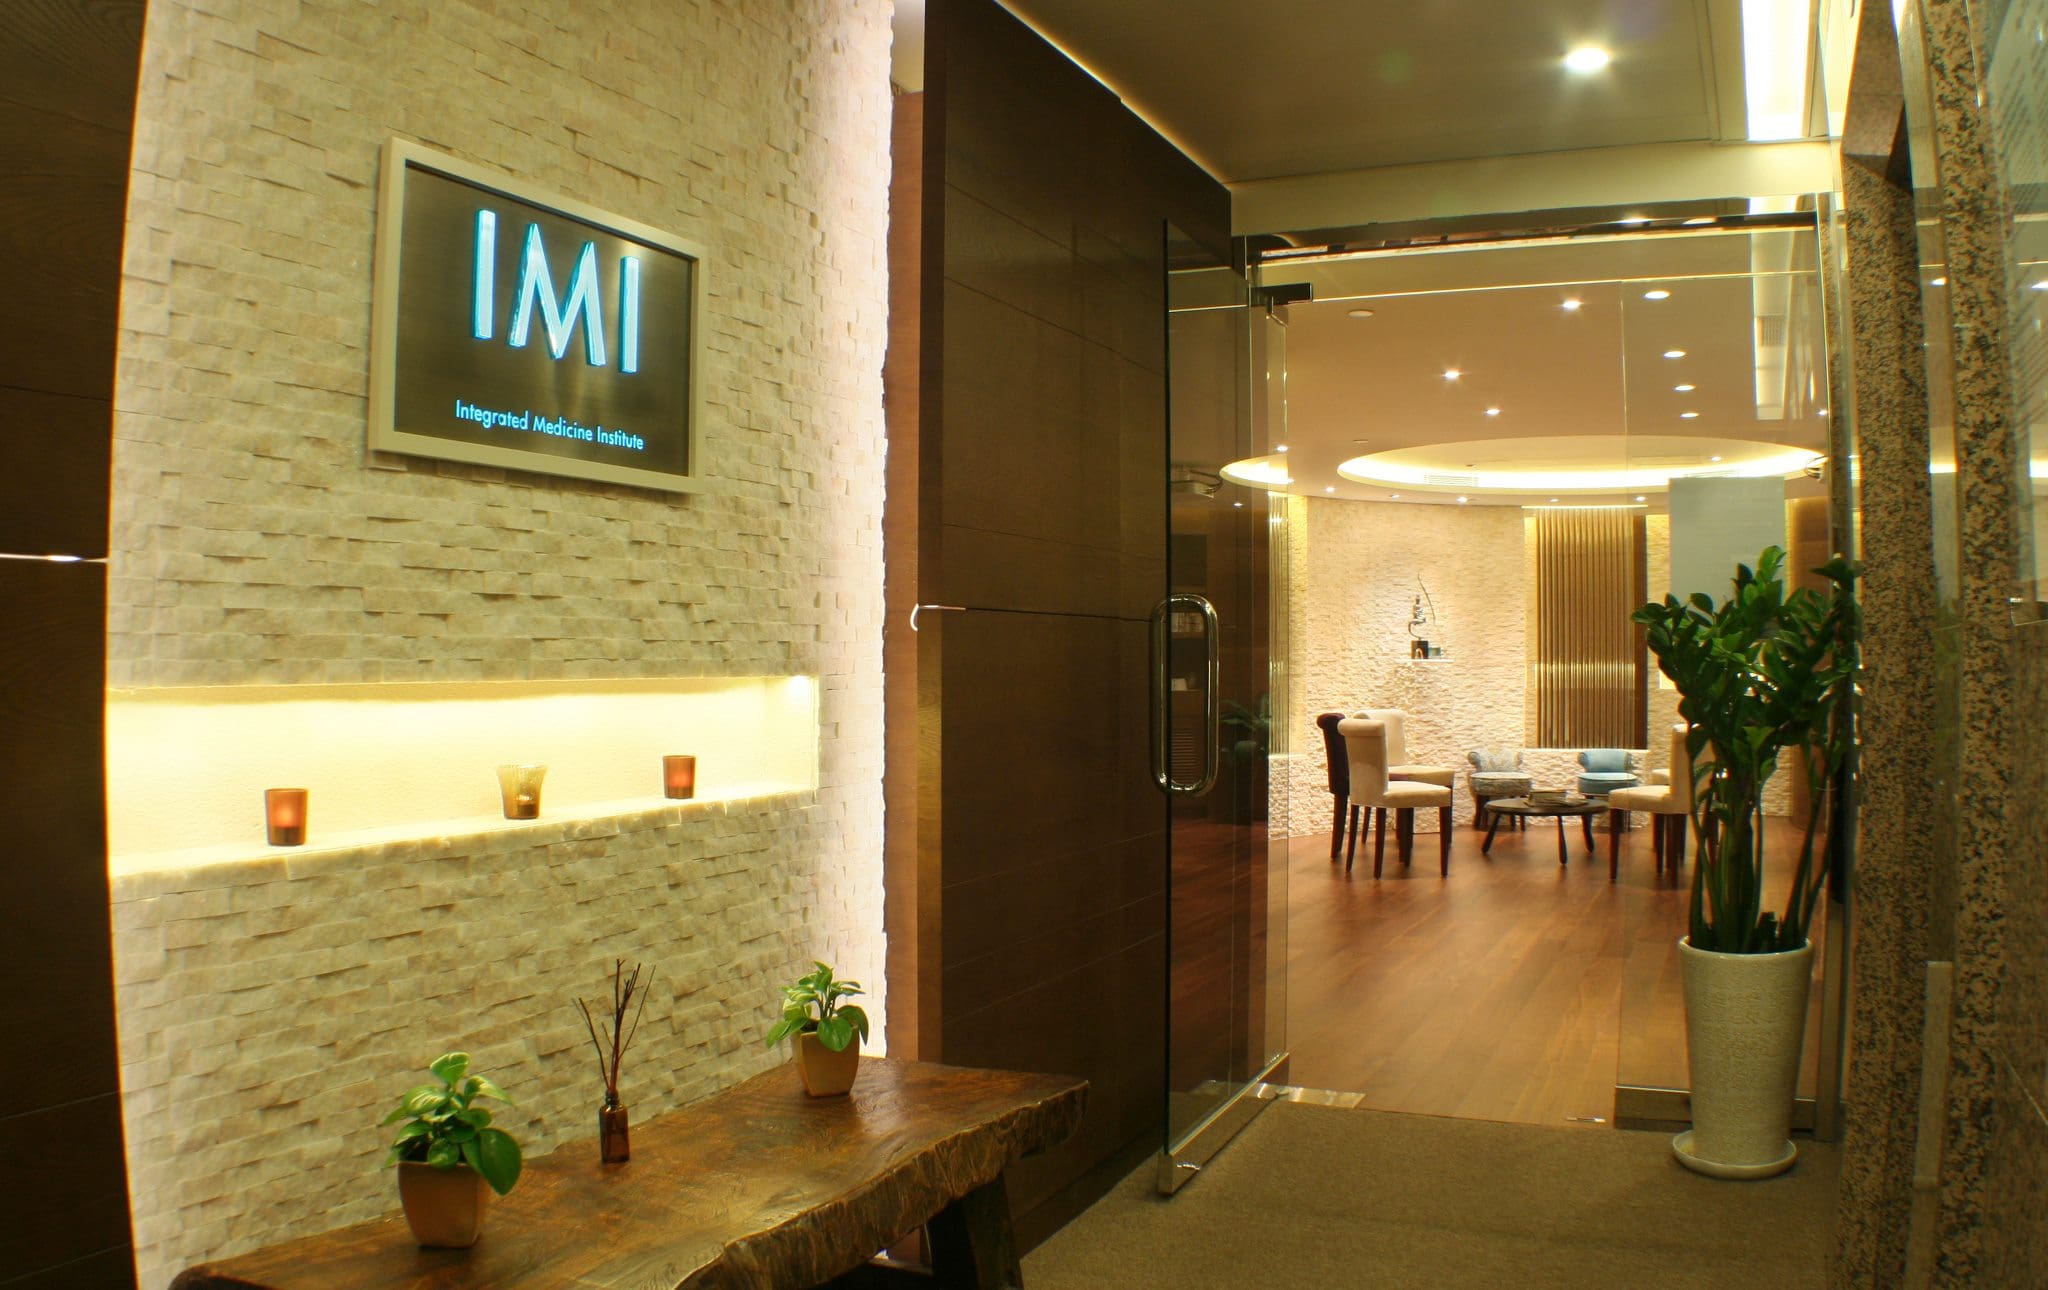 IMI hong kong integrated medicine naturopathy, natural medicine